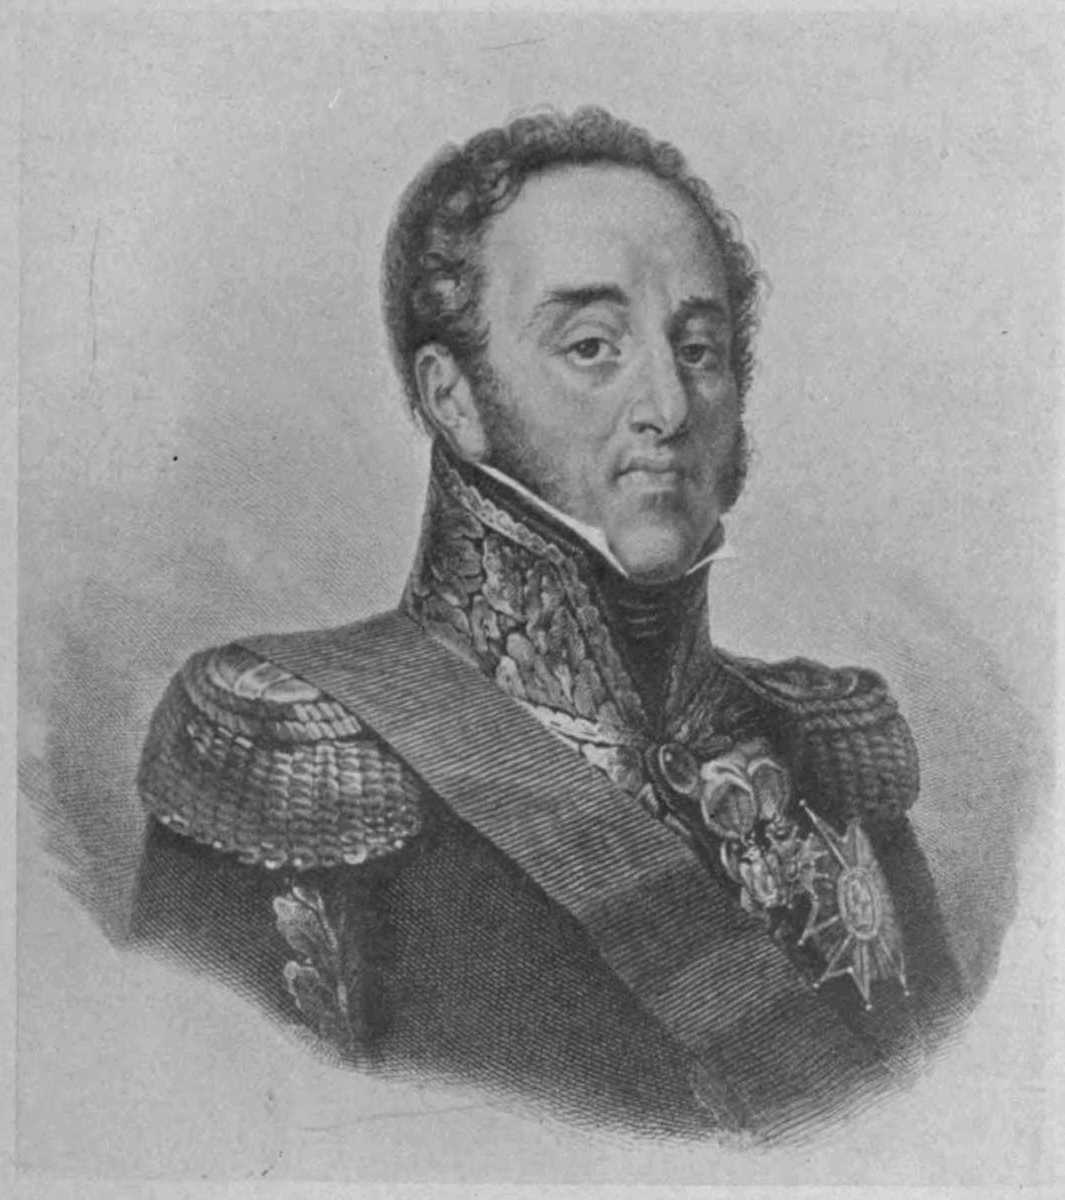 Portrait of Louis-Nicolas Davout free public domain image